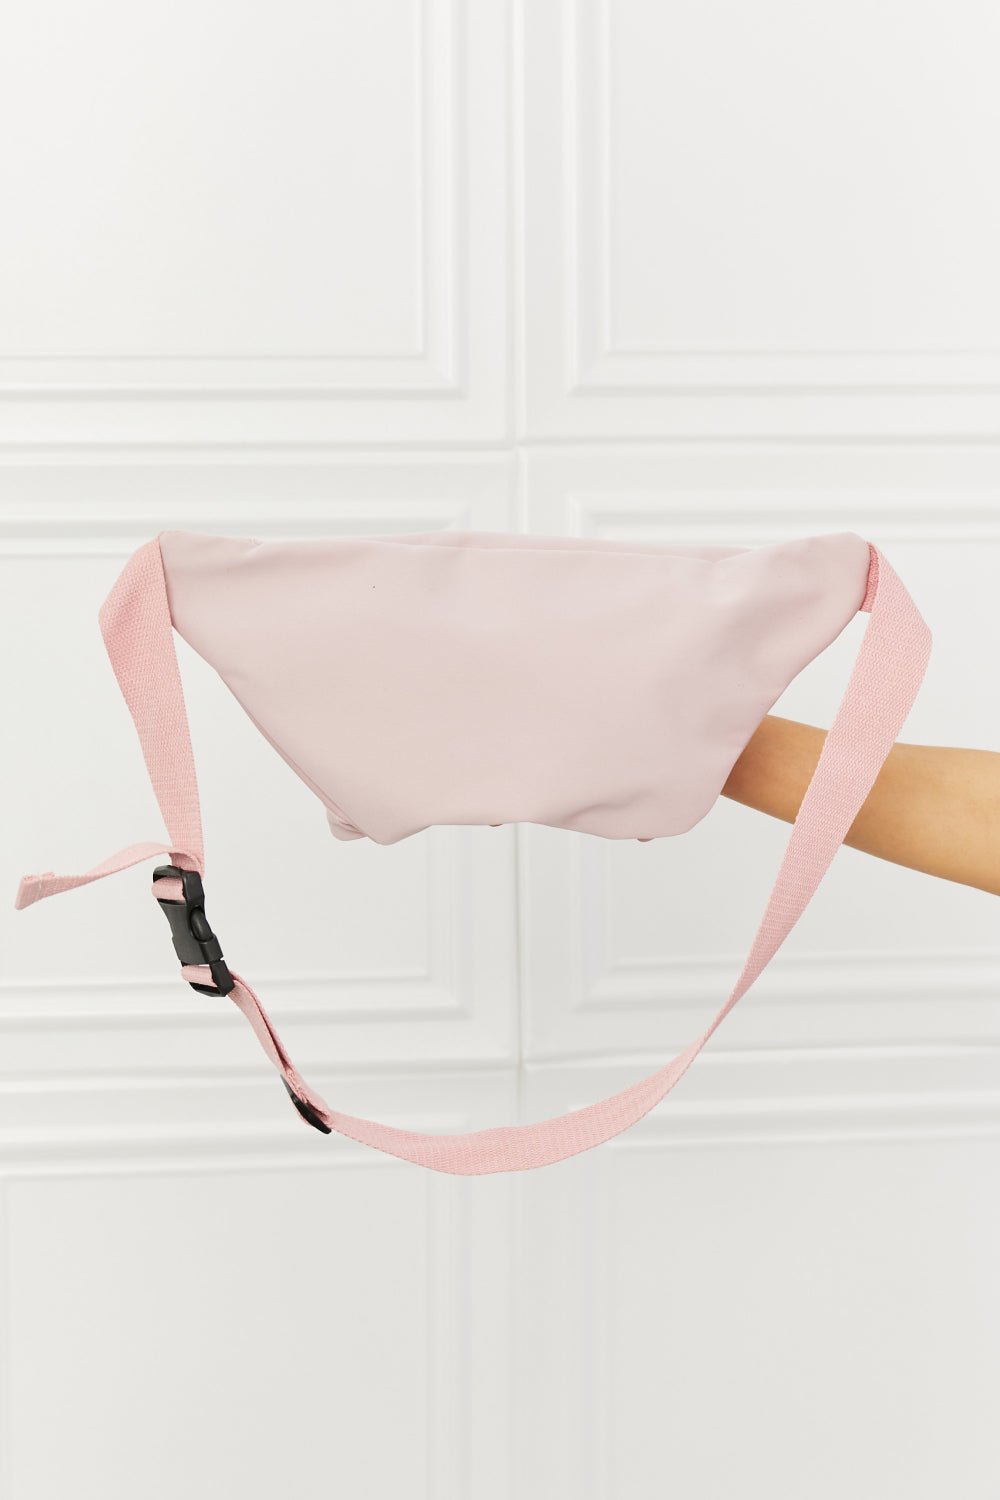 Sling Bag in Blush PinkSling BagFame